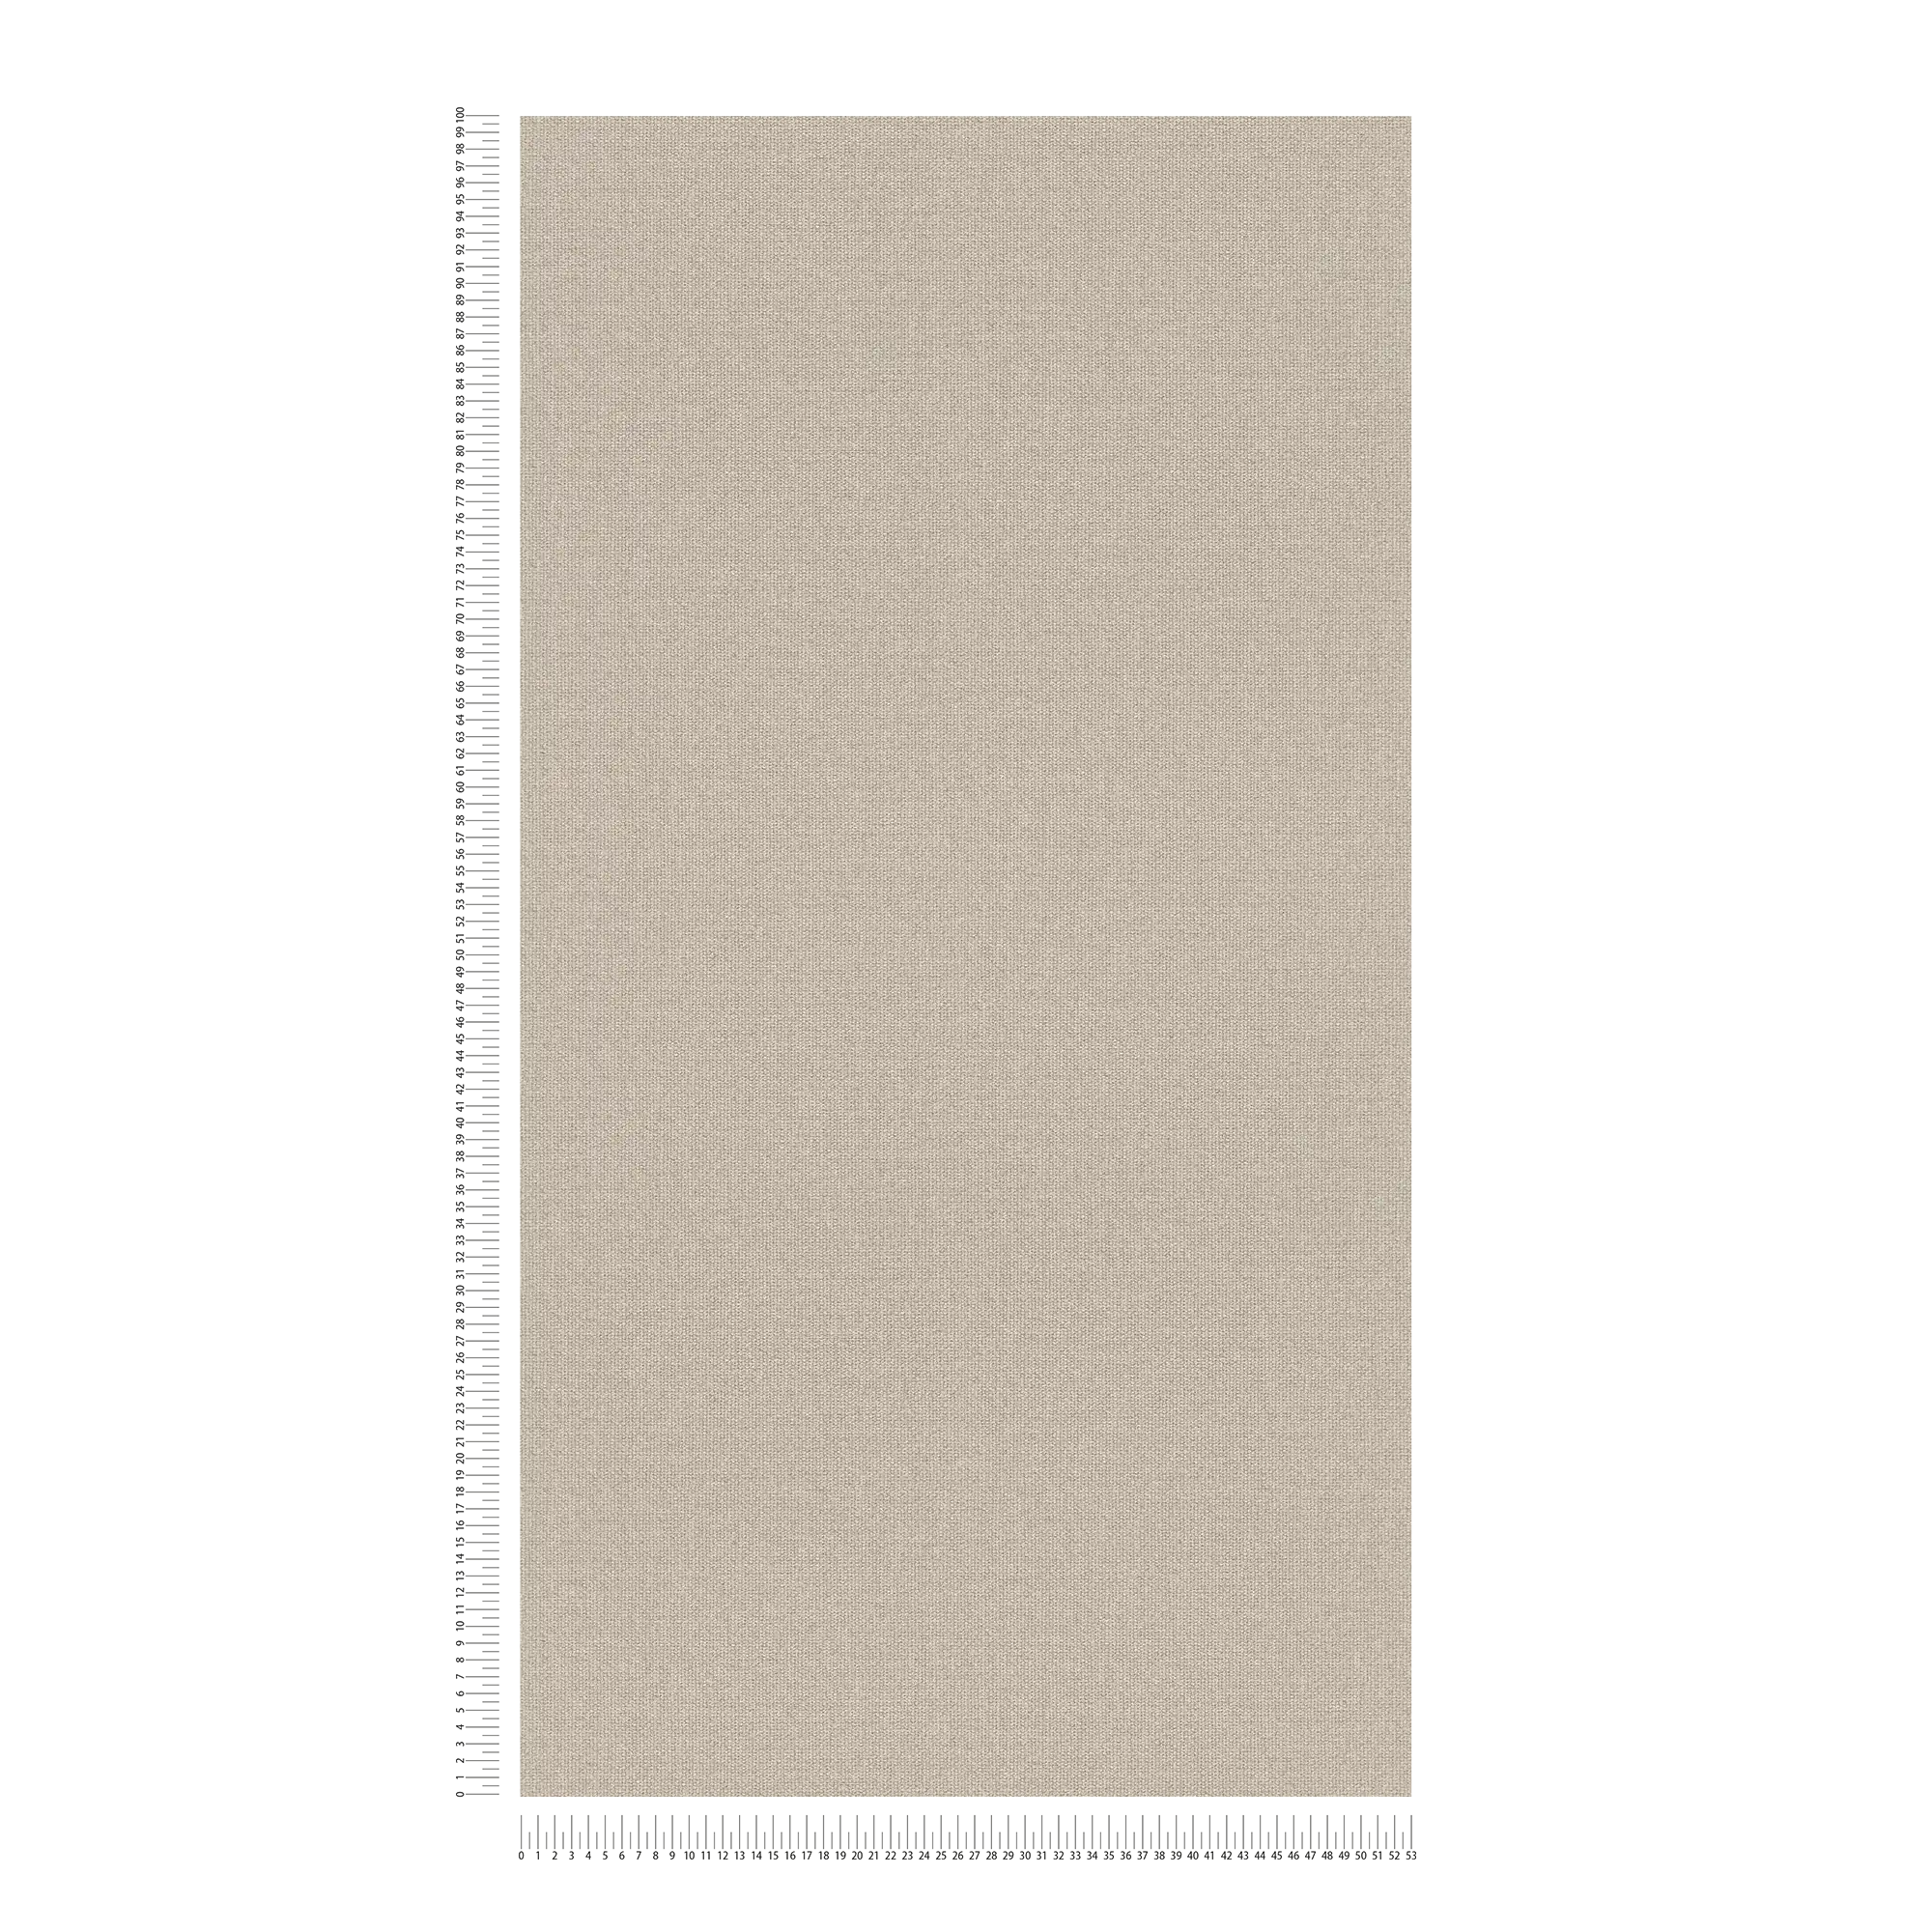             Papel pintado de aspecto de lino con superficie texturizada, liso - Beige, Gris
        